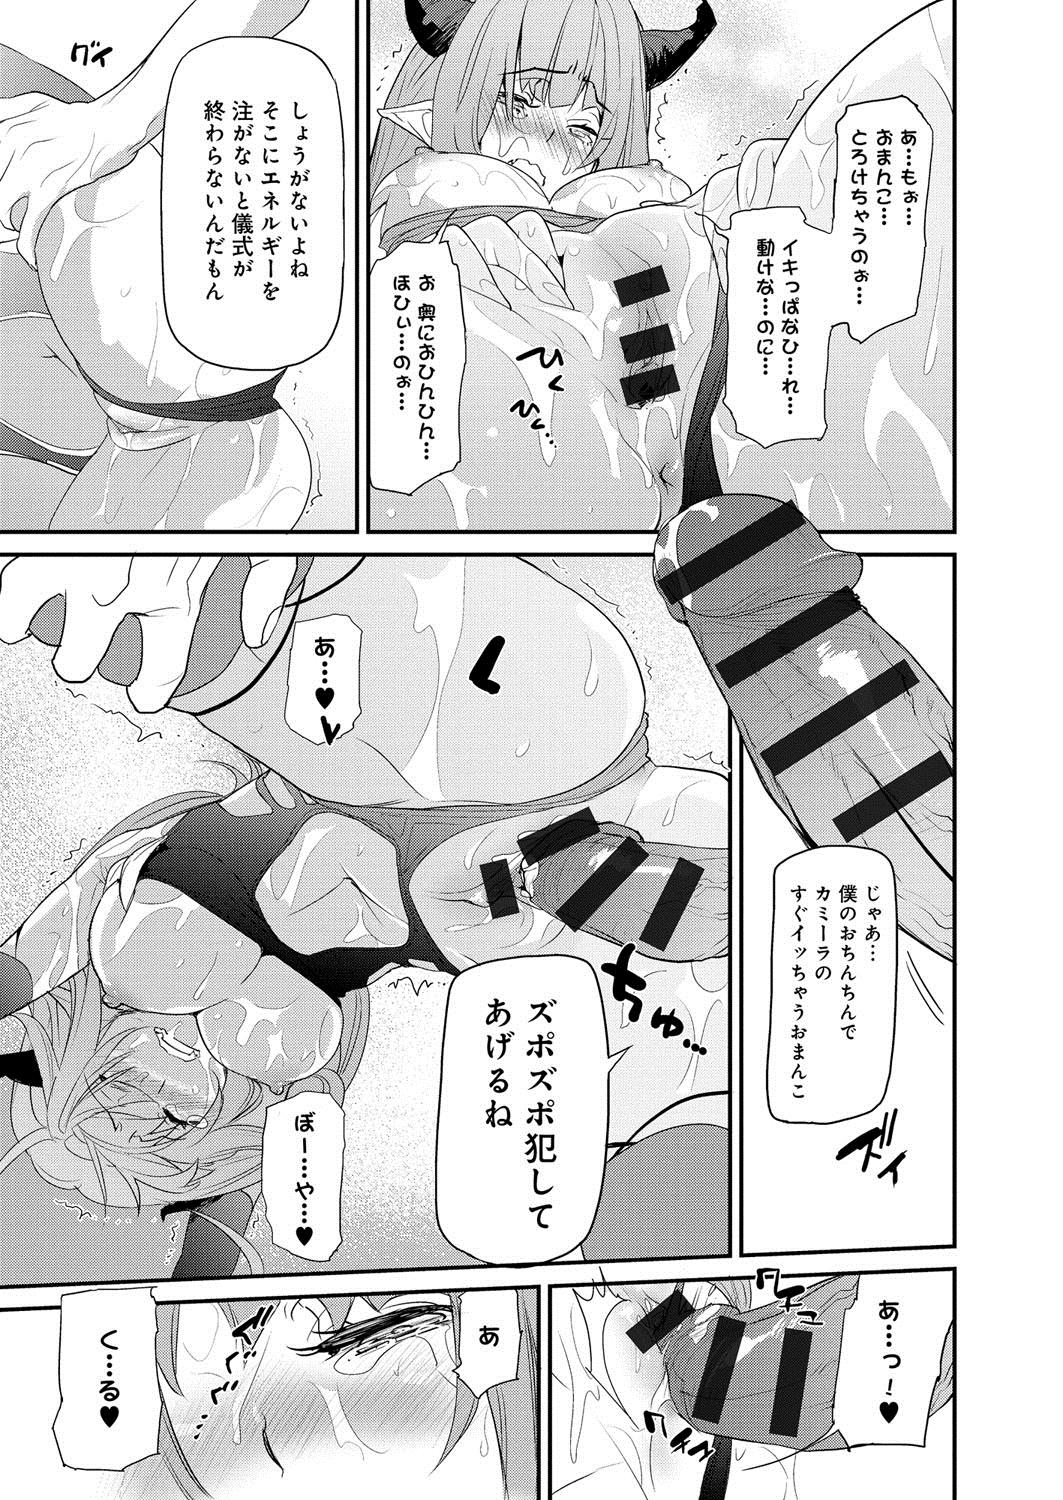 [Anthology] Lord of Valkyrie Adult - Comic Anthology R18 Handakara Saigomade... Mou, Kishi-sama no Ecchi♪ 57